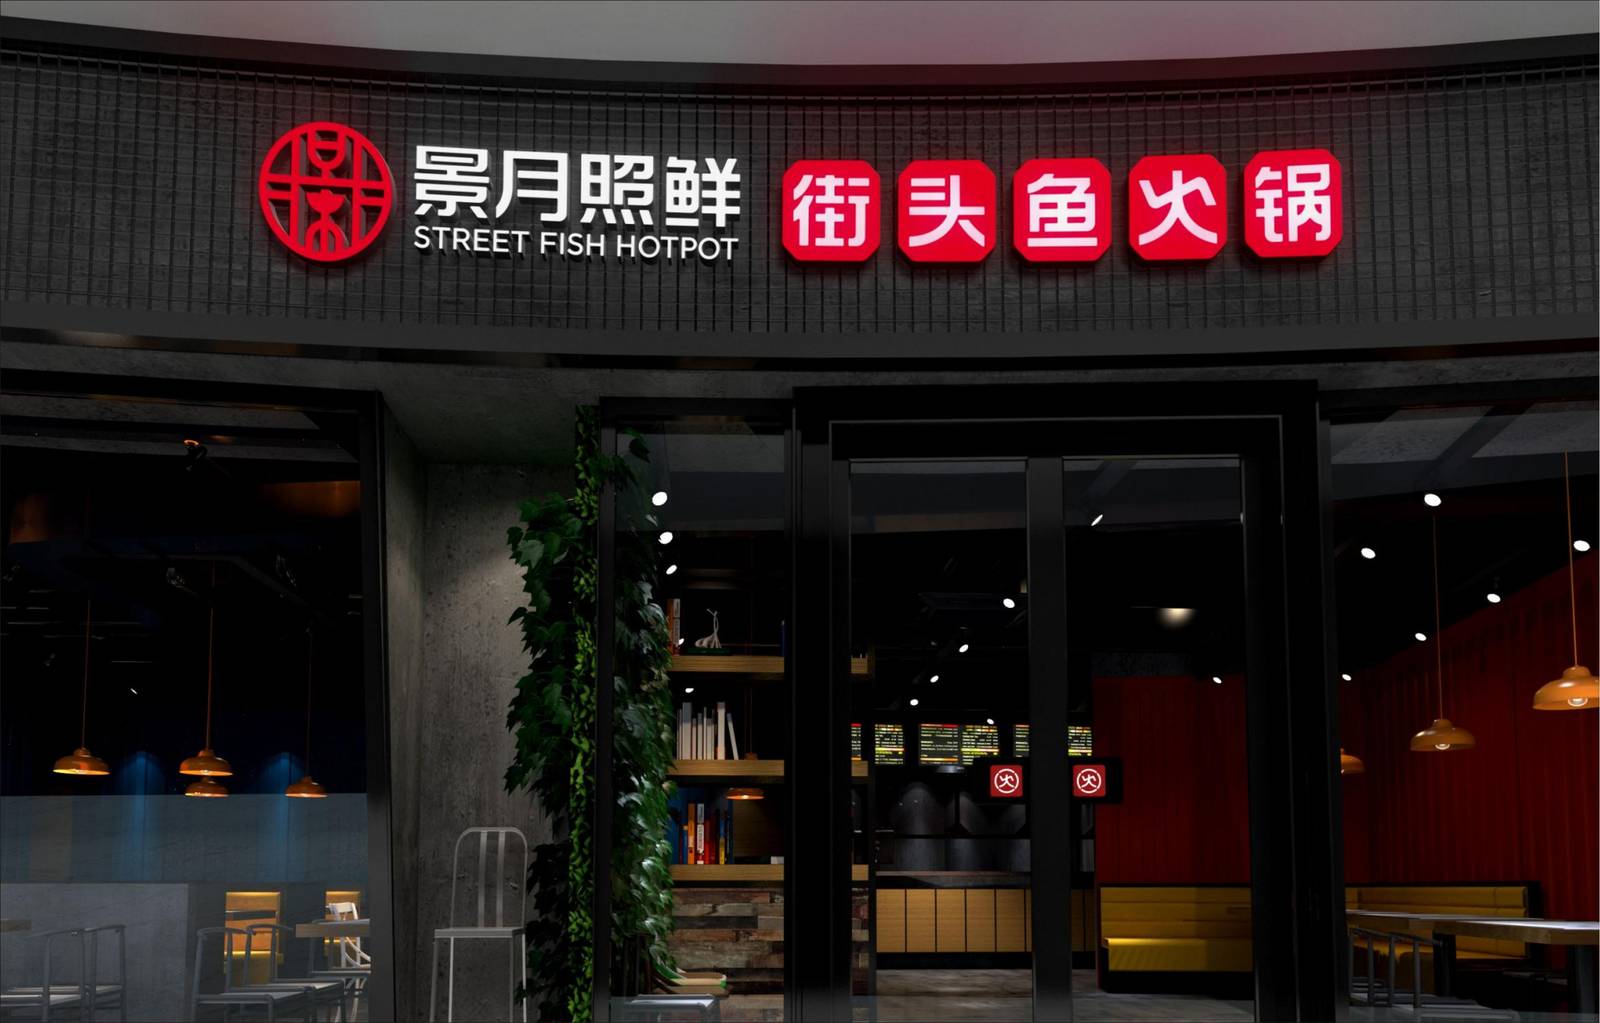 景月照鲜品牌街头鱼火锅餐饮标志LOGO-第11张